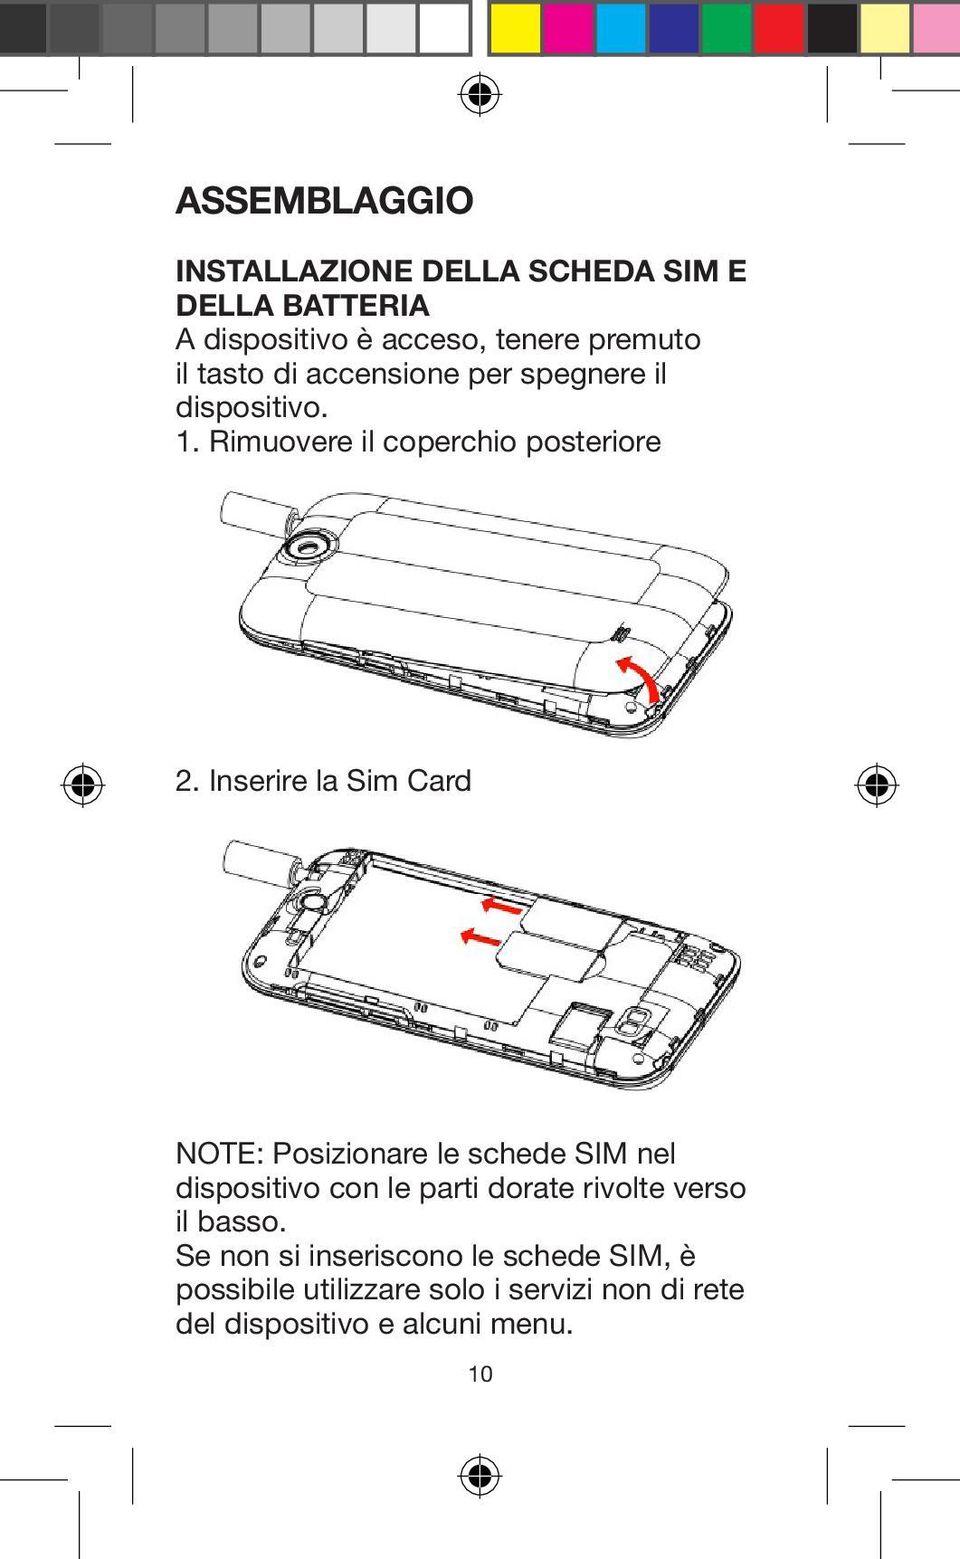 Inserire la Sim Card NOTE: Posizionare le schede SIM nel dispositivo con le parti dorate rivolte verso il